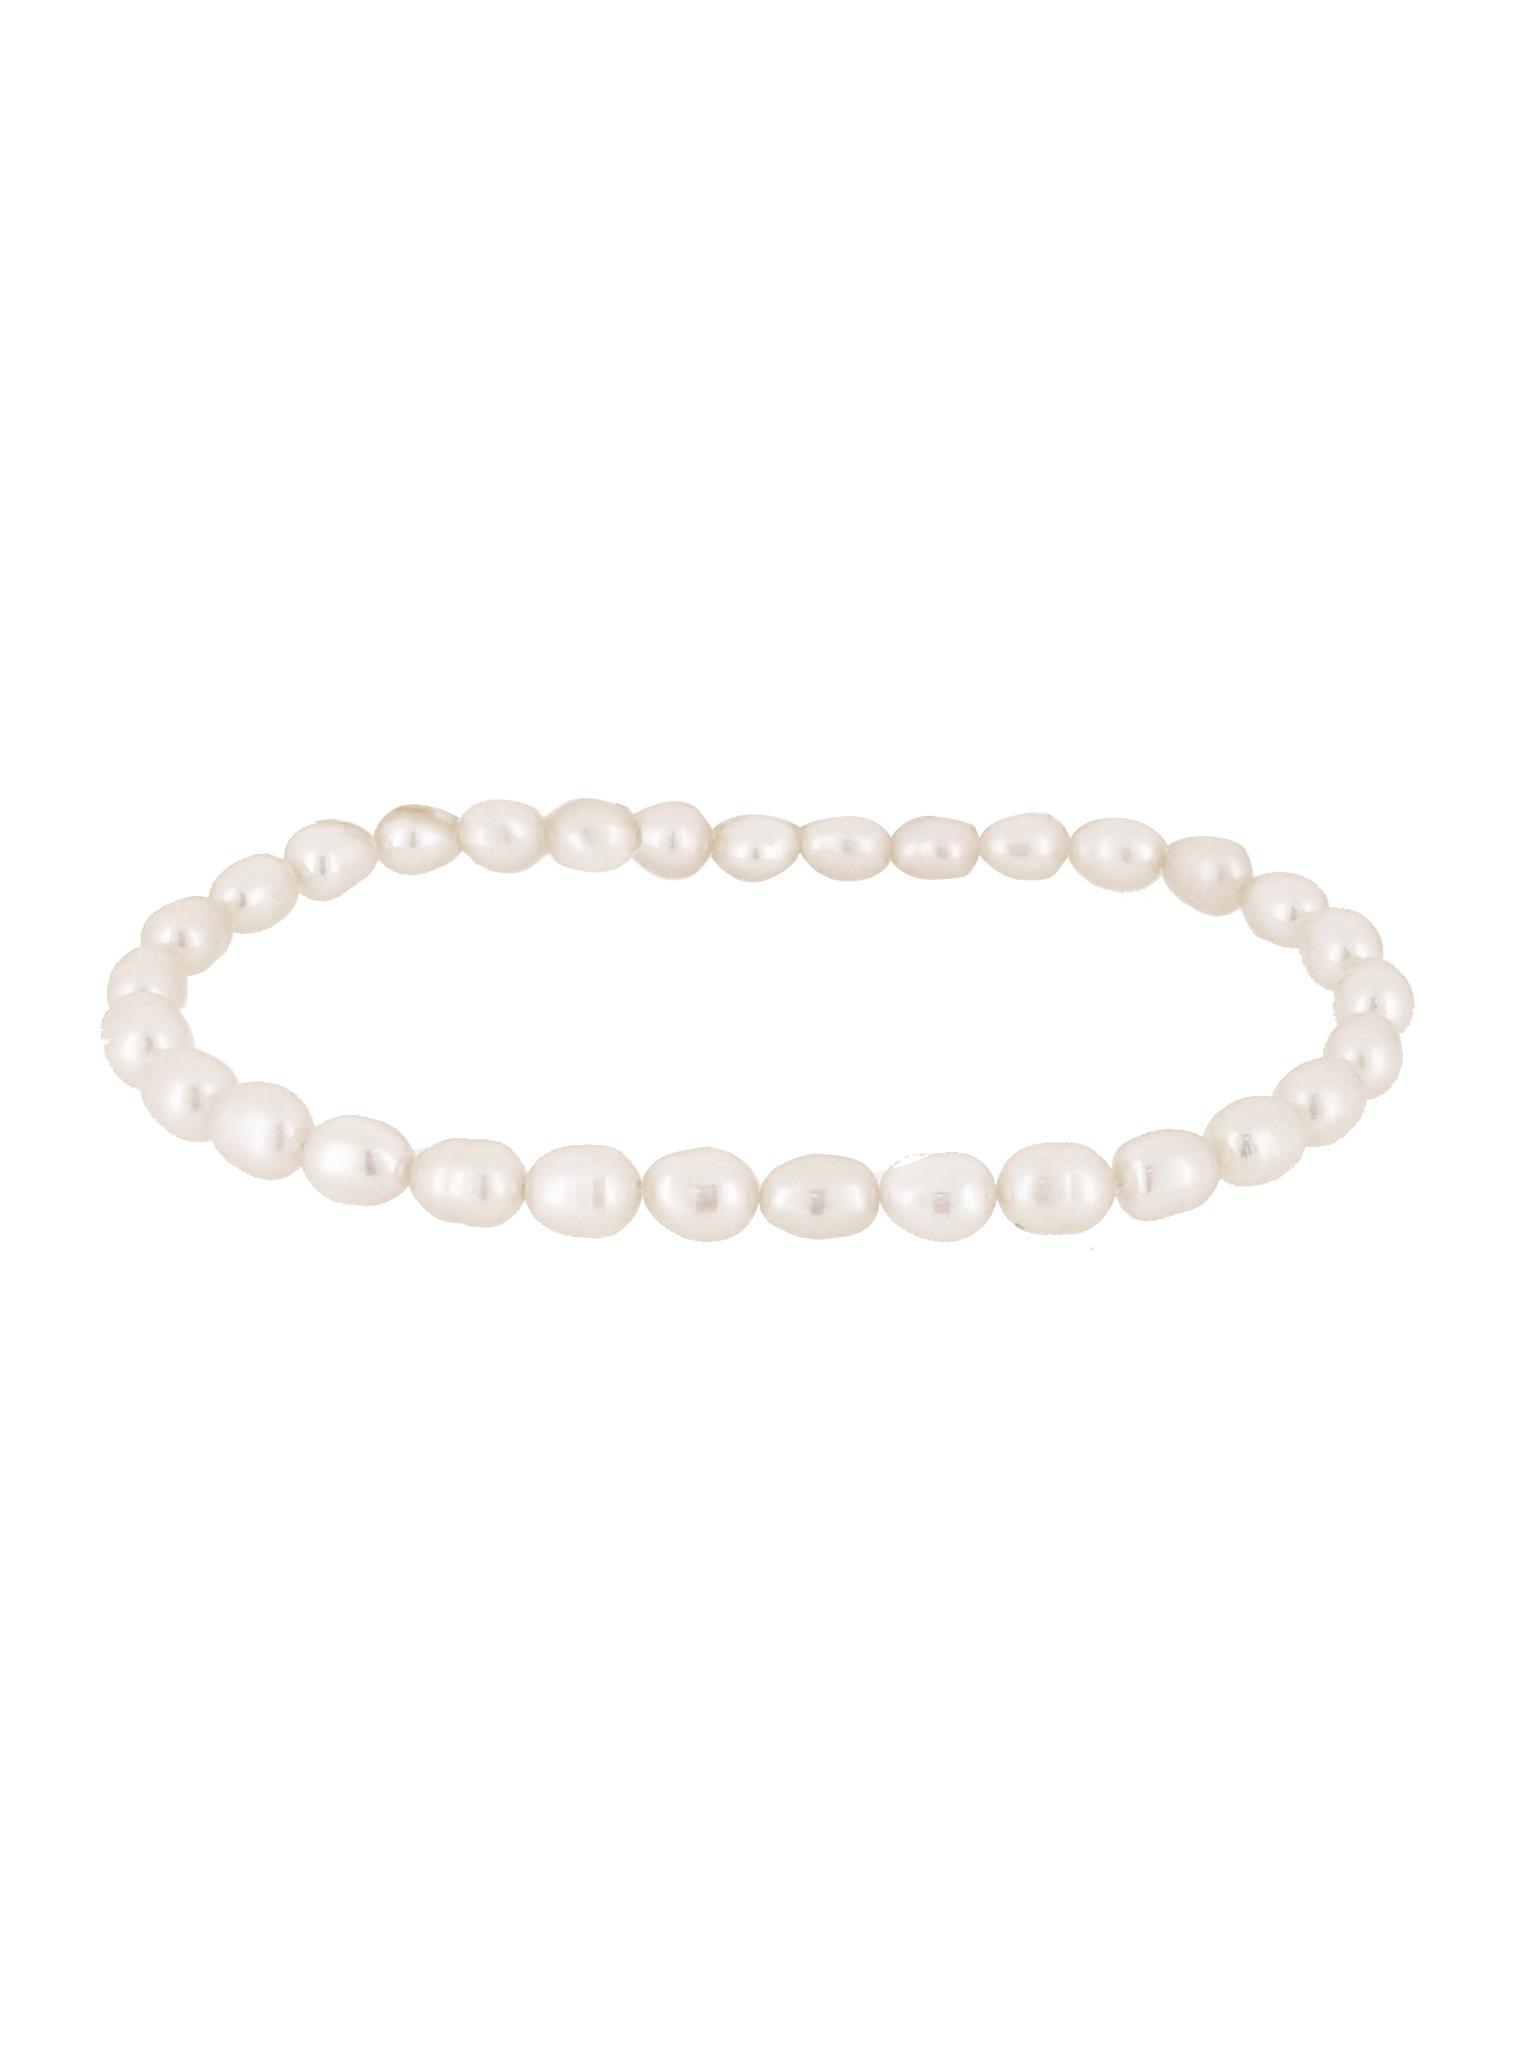 Details 96+ about pearl bracelet australia best - NEC